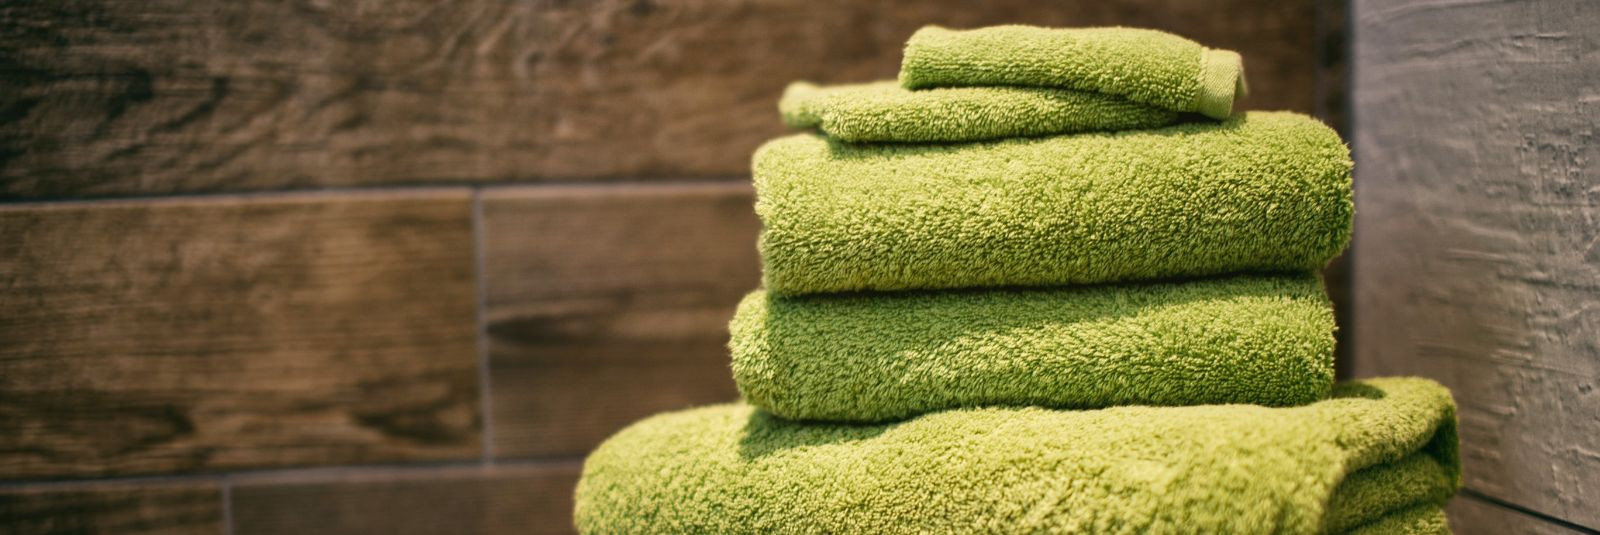 Kas olete kunagi otsinud froteerätikuid, mis pakuvad ülimat pehmust ja on valmistatud looduslikust materjalist, et hellitada teie nahka pärast vanni või duši al